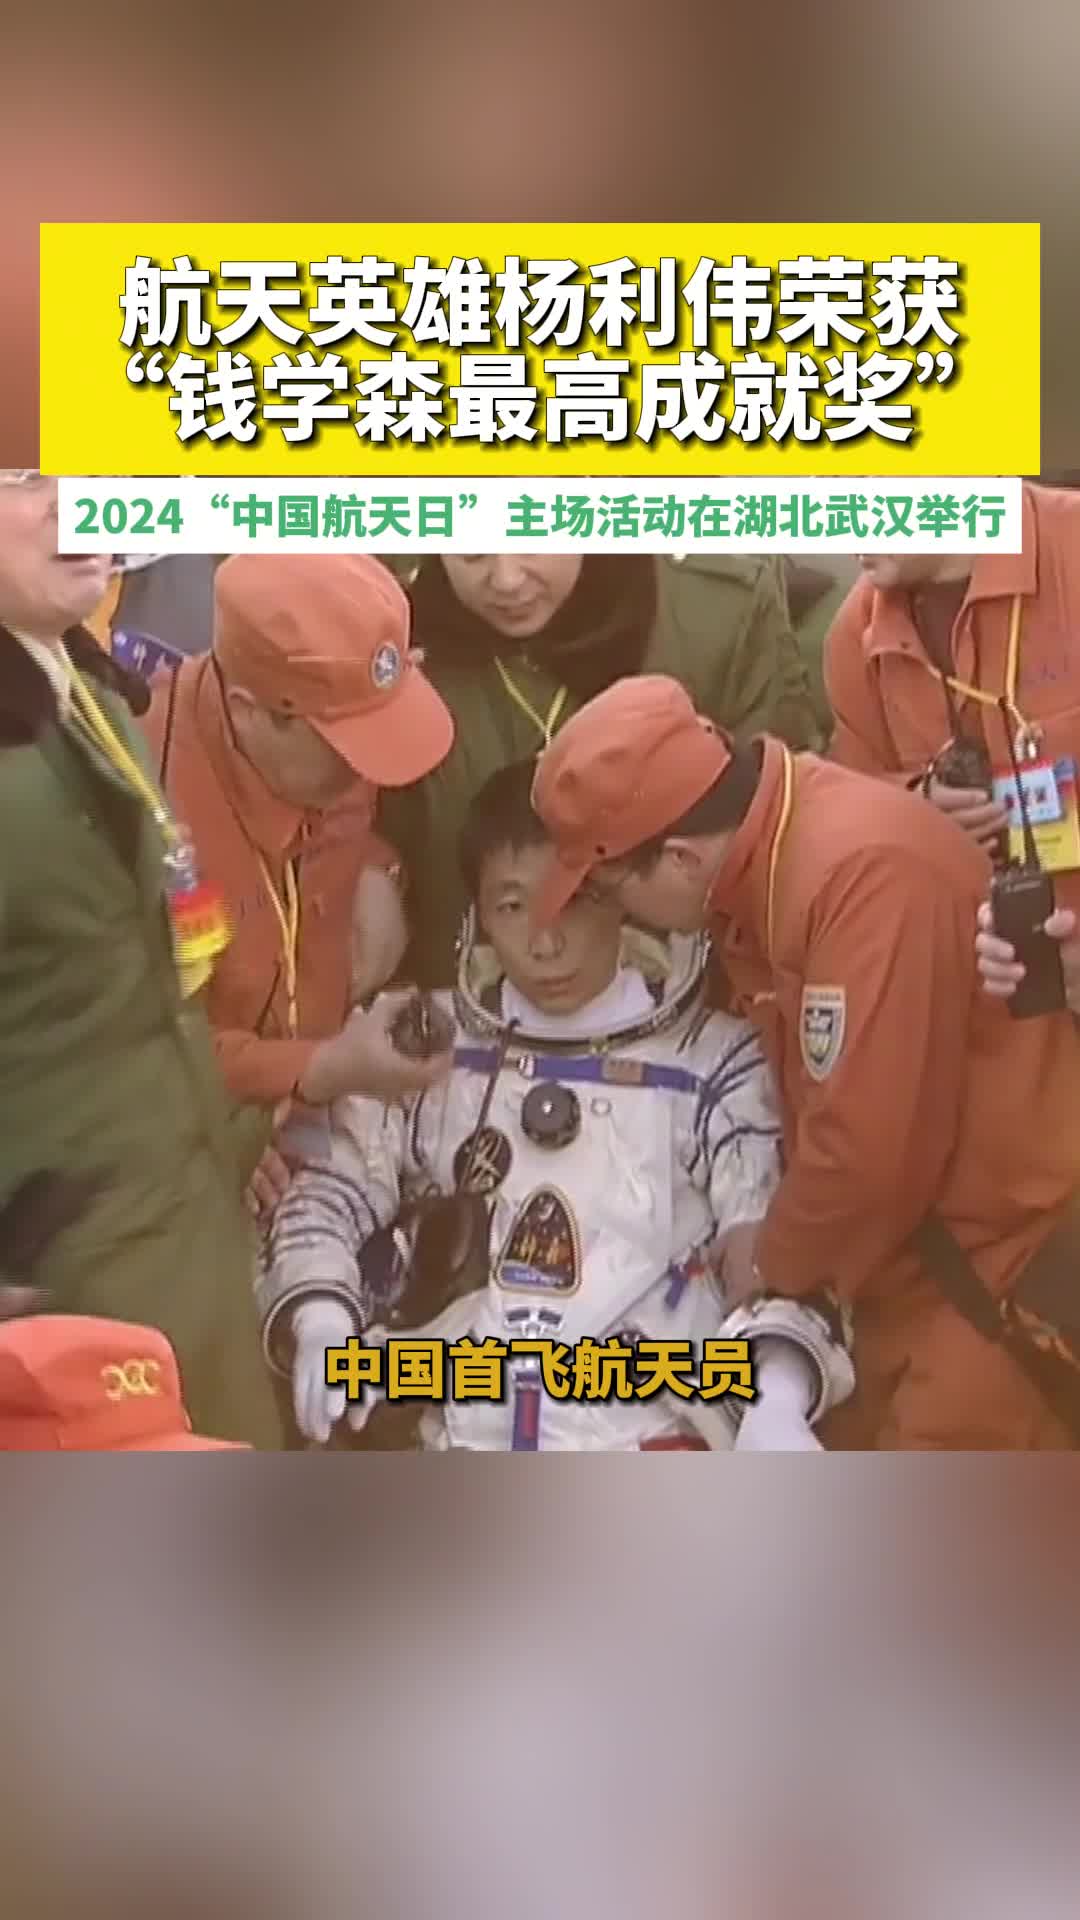 中国载人航天工程副总设计师、中国首飞航天员、航天英雄杨利伟荣获“钱学森最高成就奖”